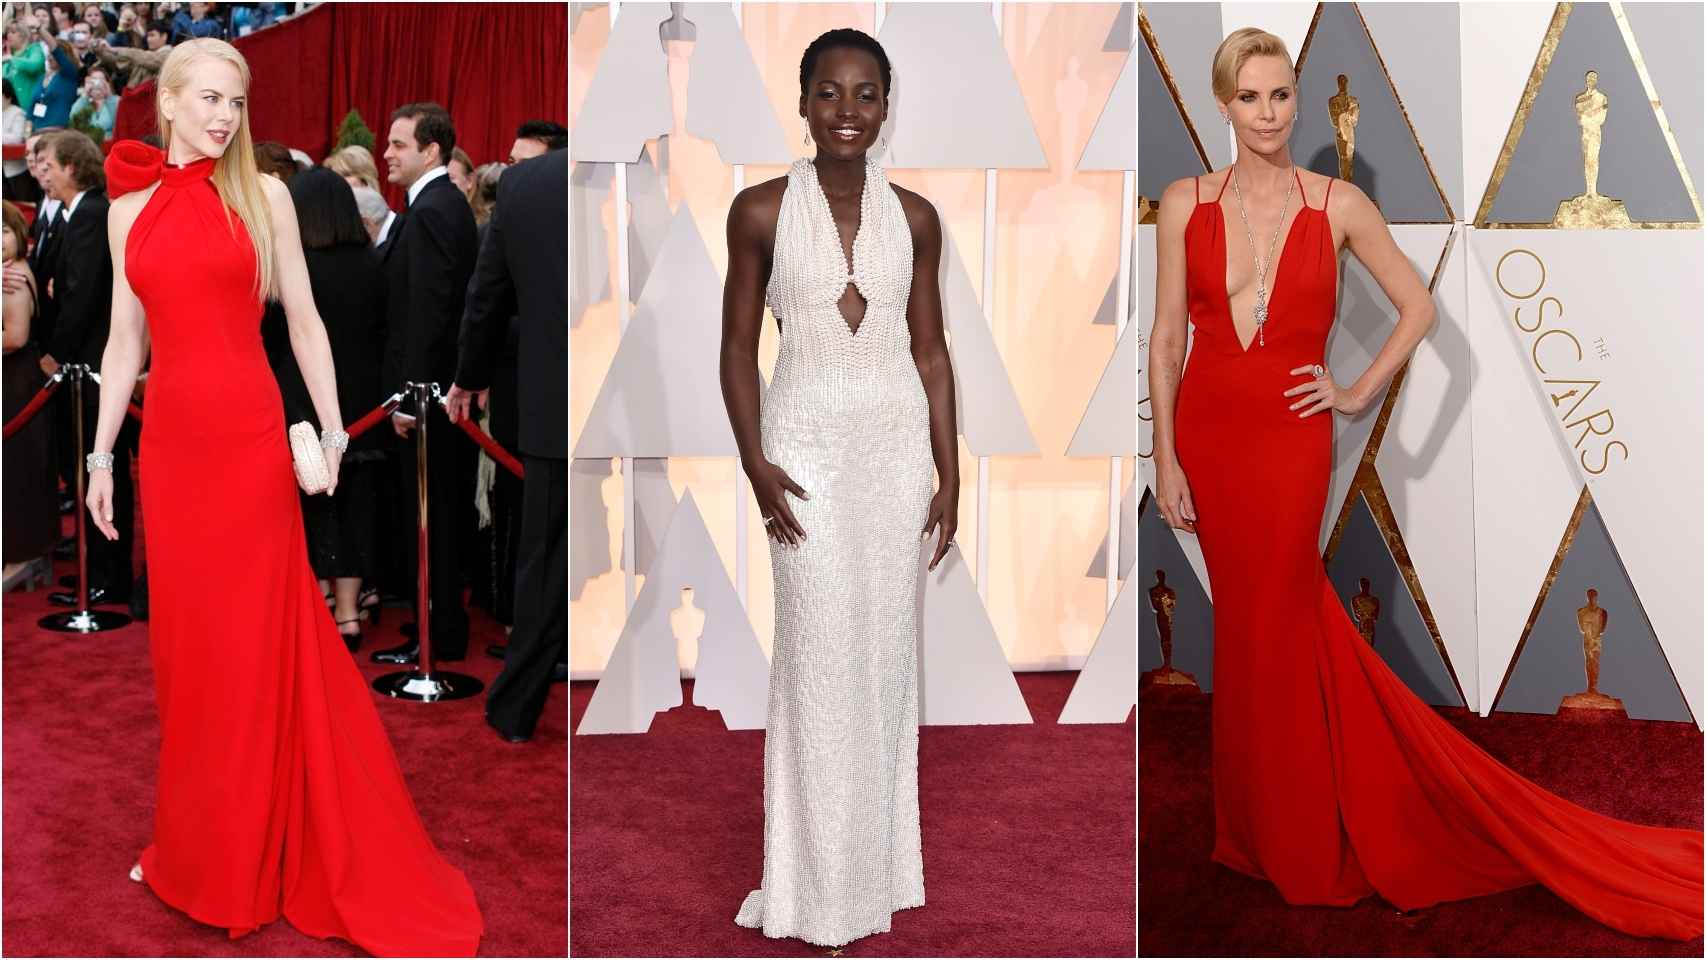 De izquierda a derecha: Nicole Kidman, Lupita Nyong'o y Charlize Theron en la alfombra roja de los premios más importantes del cine.